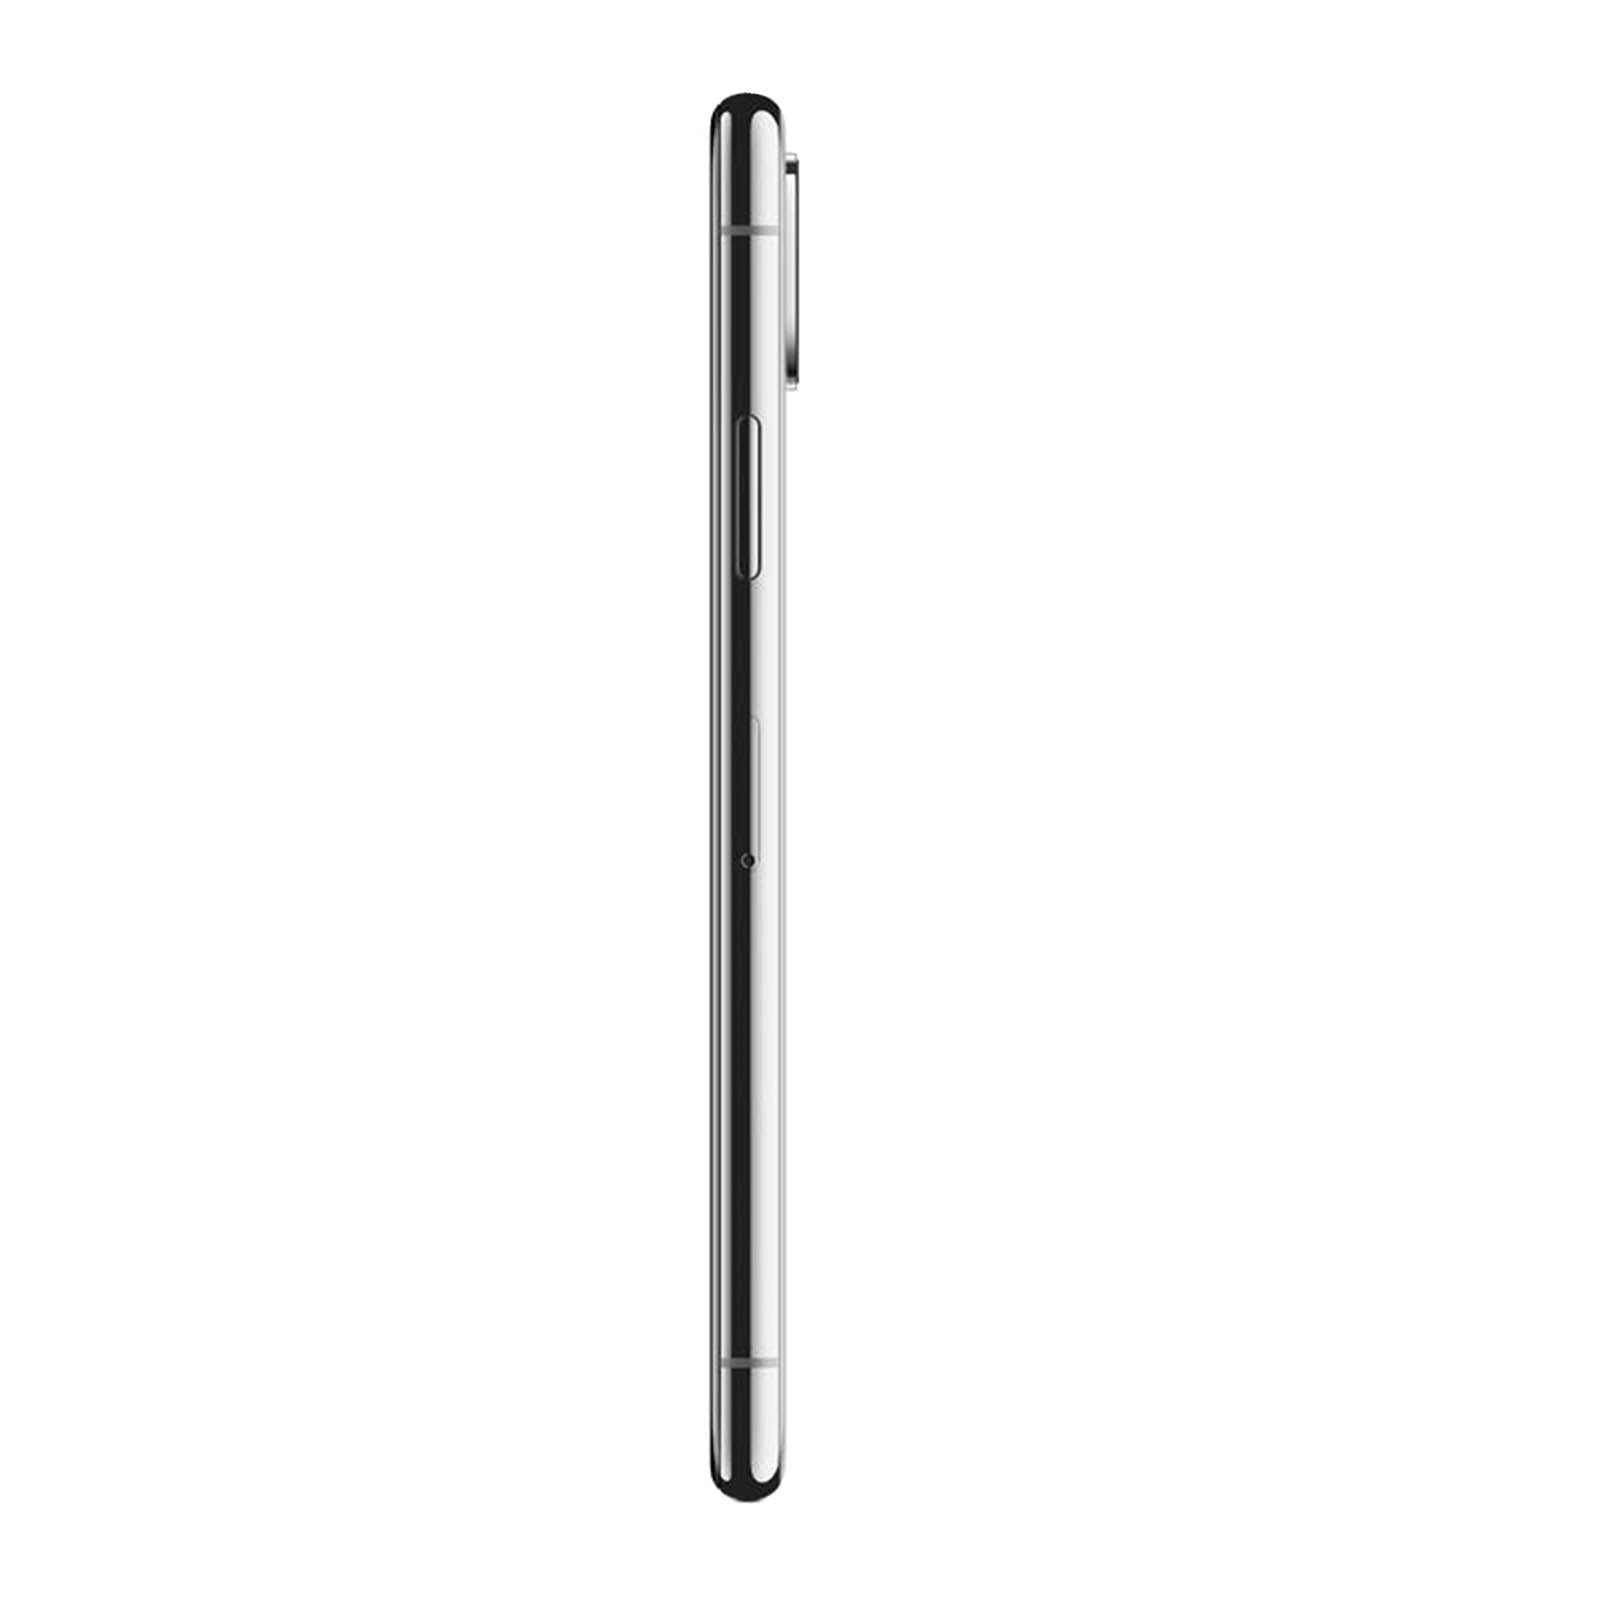 Apple iPhone XS 64GB - Space Grey – Loop Mobile - AU